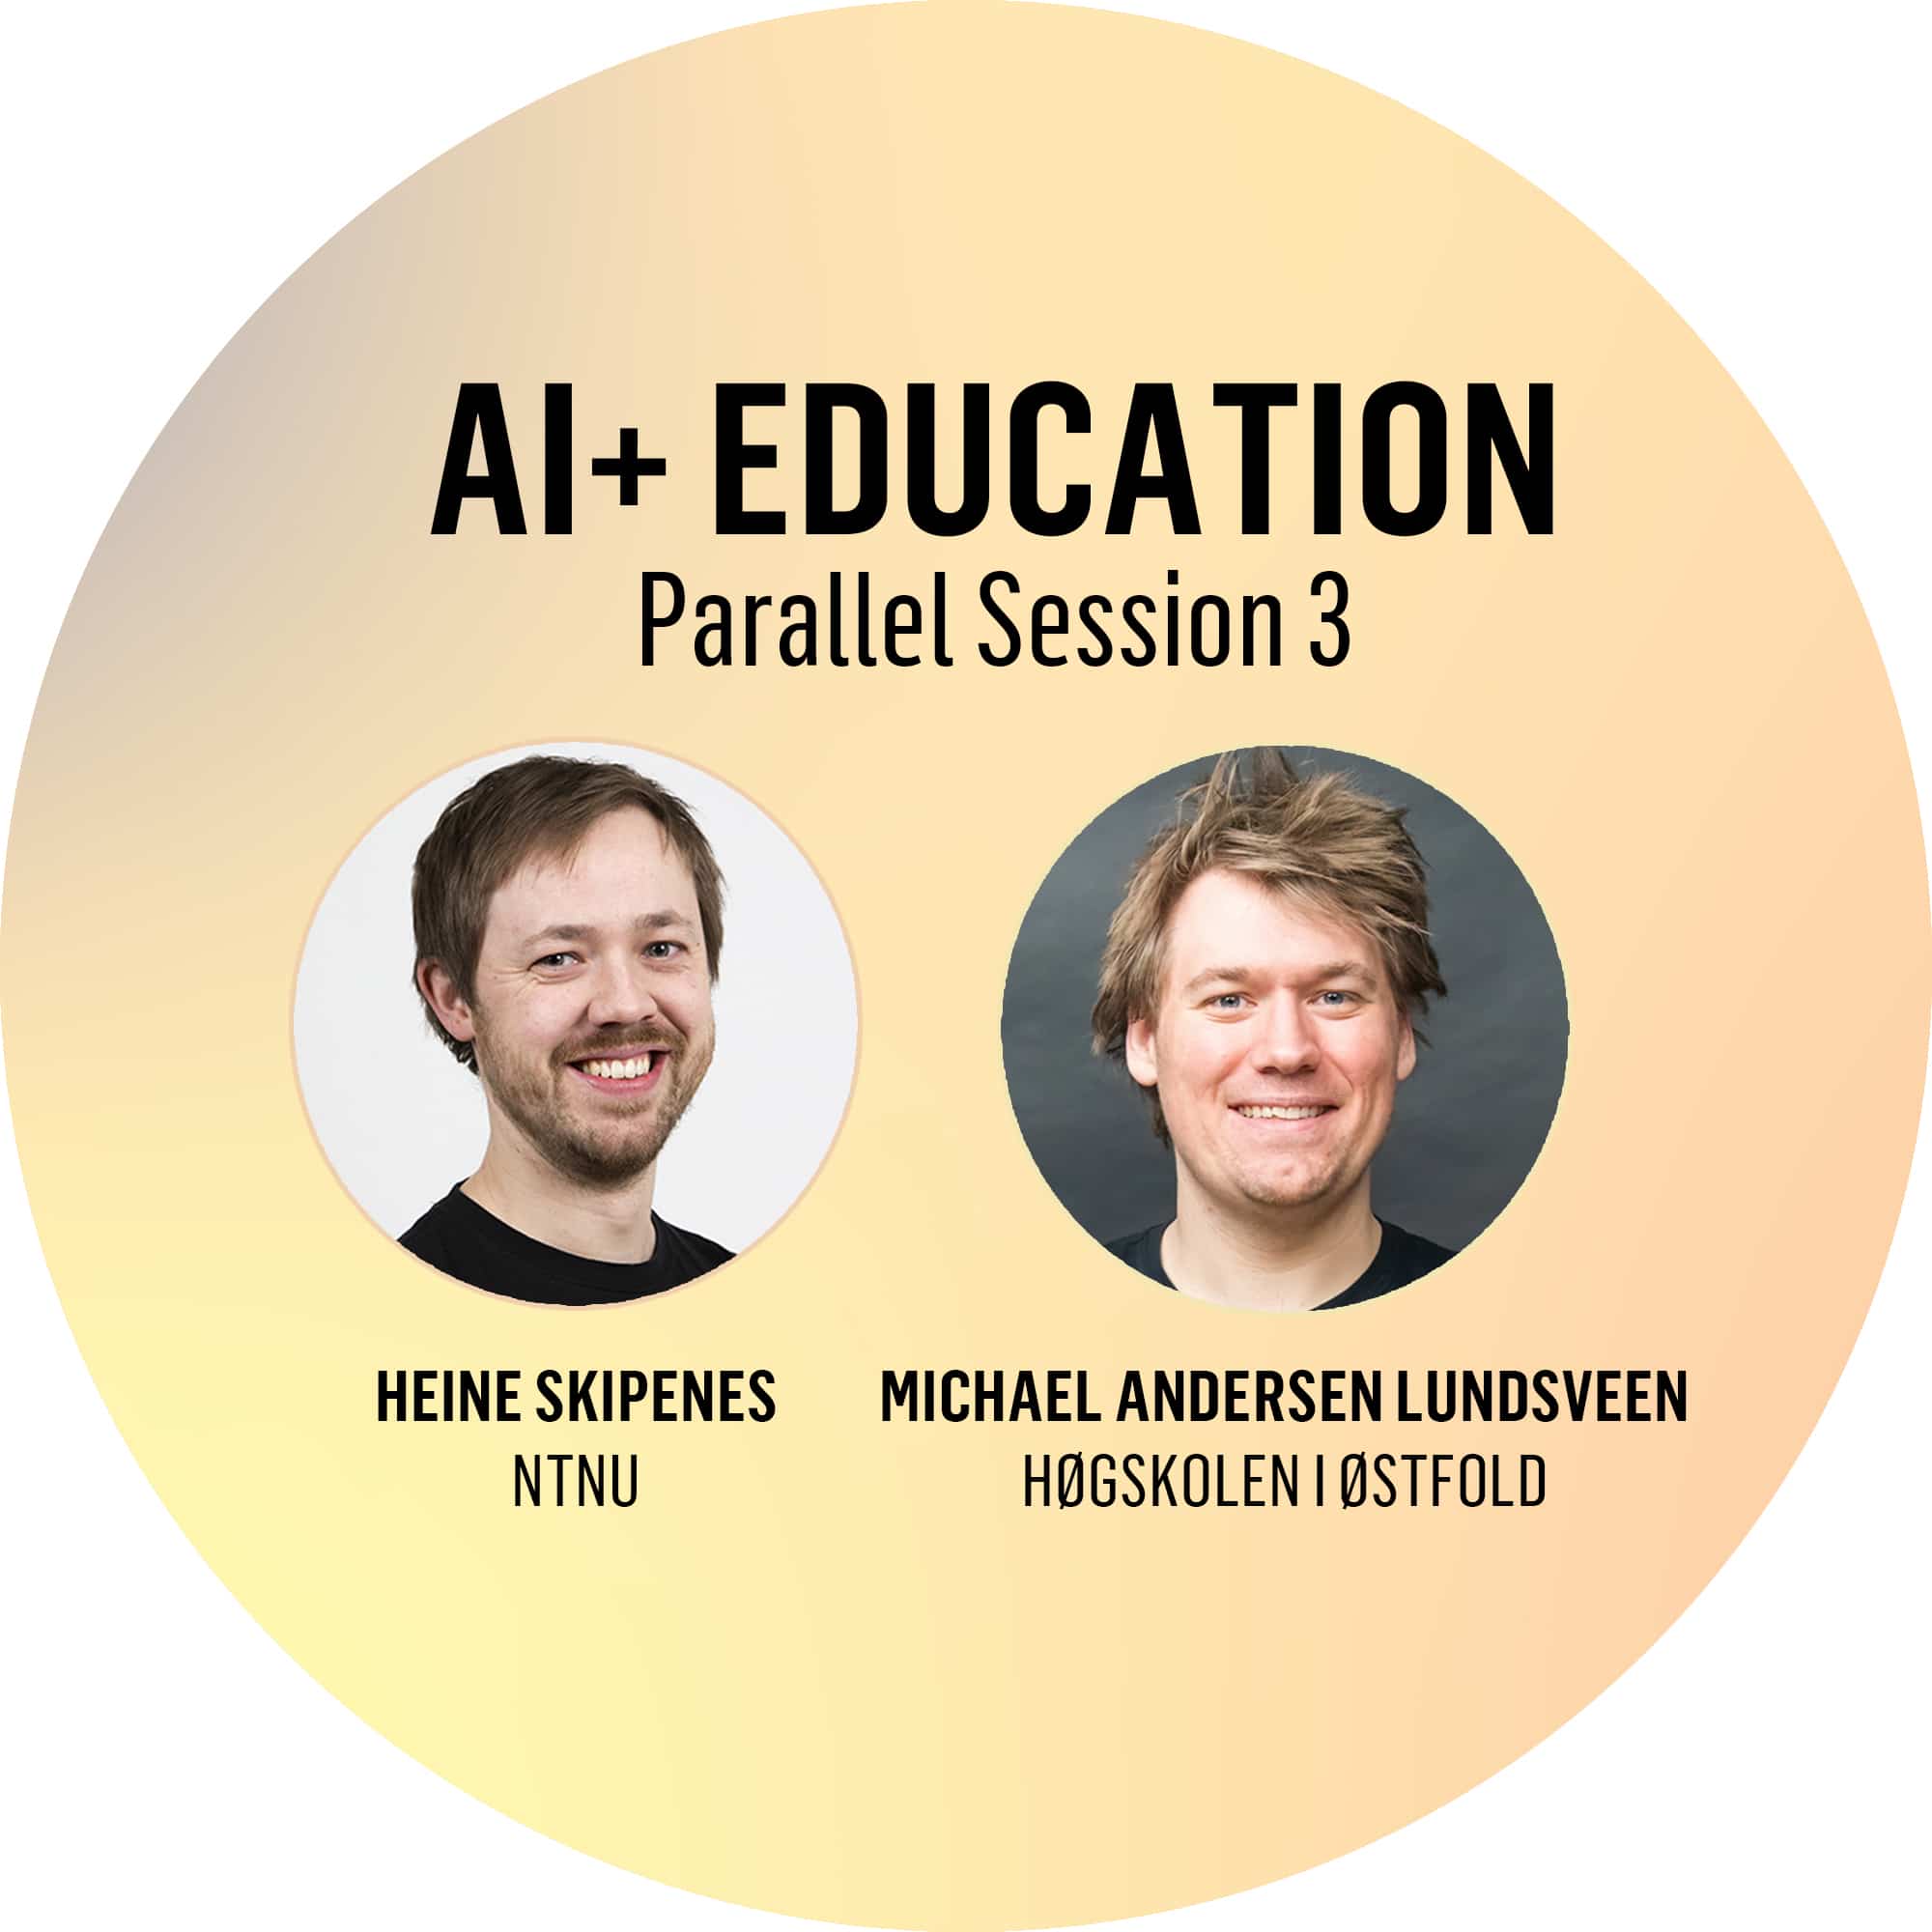 AI+ Education